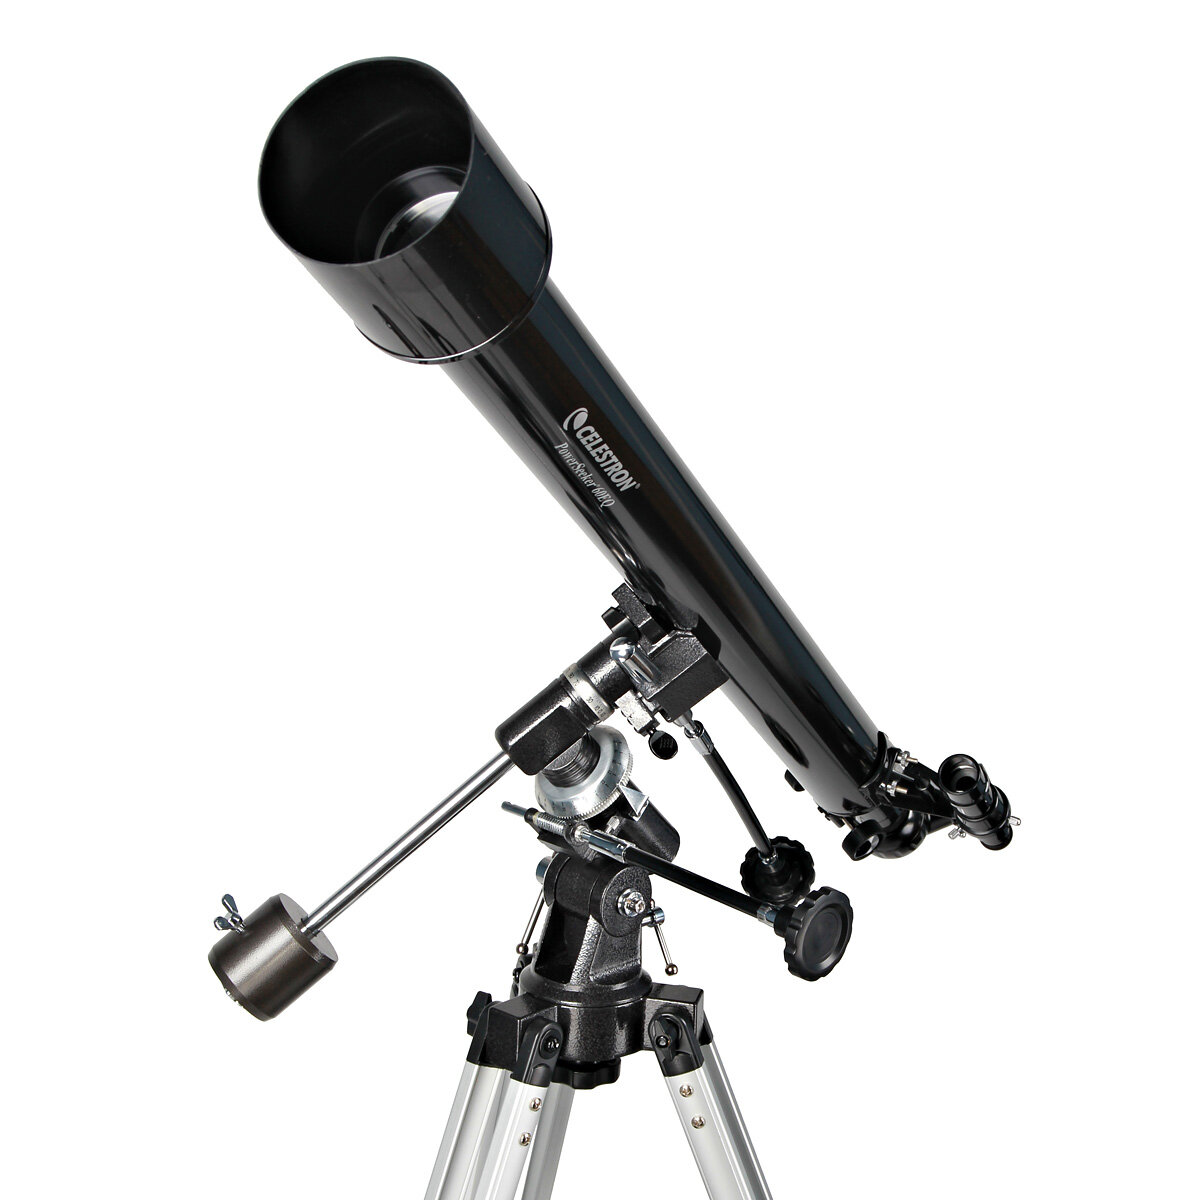 Teleskop Celestron 21043 PowerSeeker 60 EQ widoczny frontem pod skosem